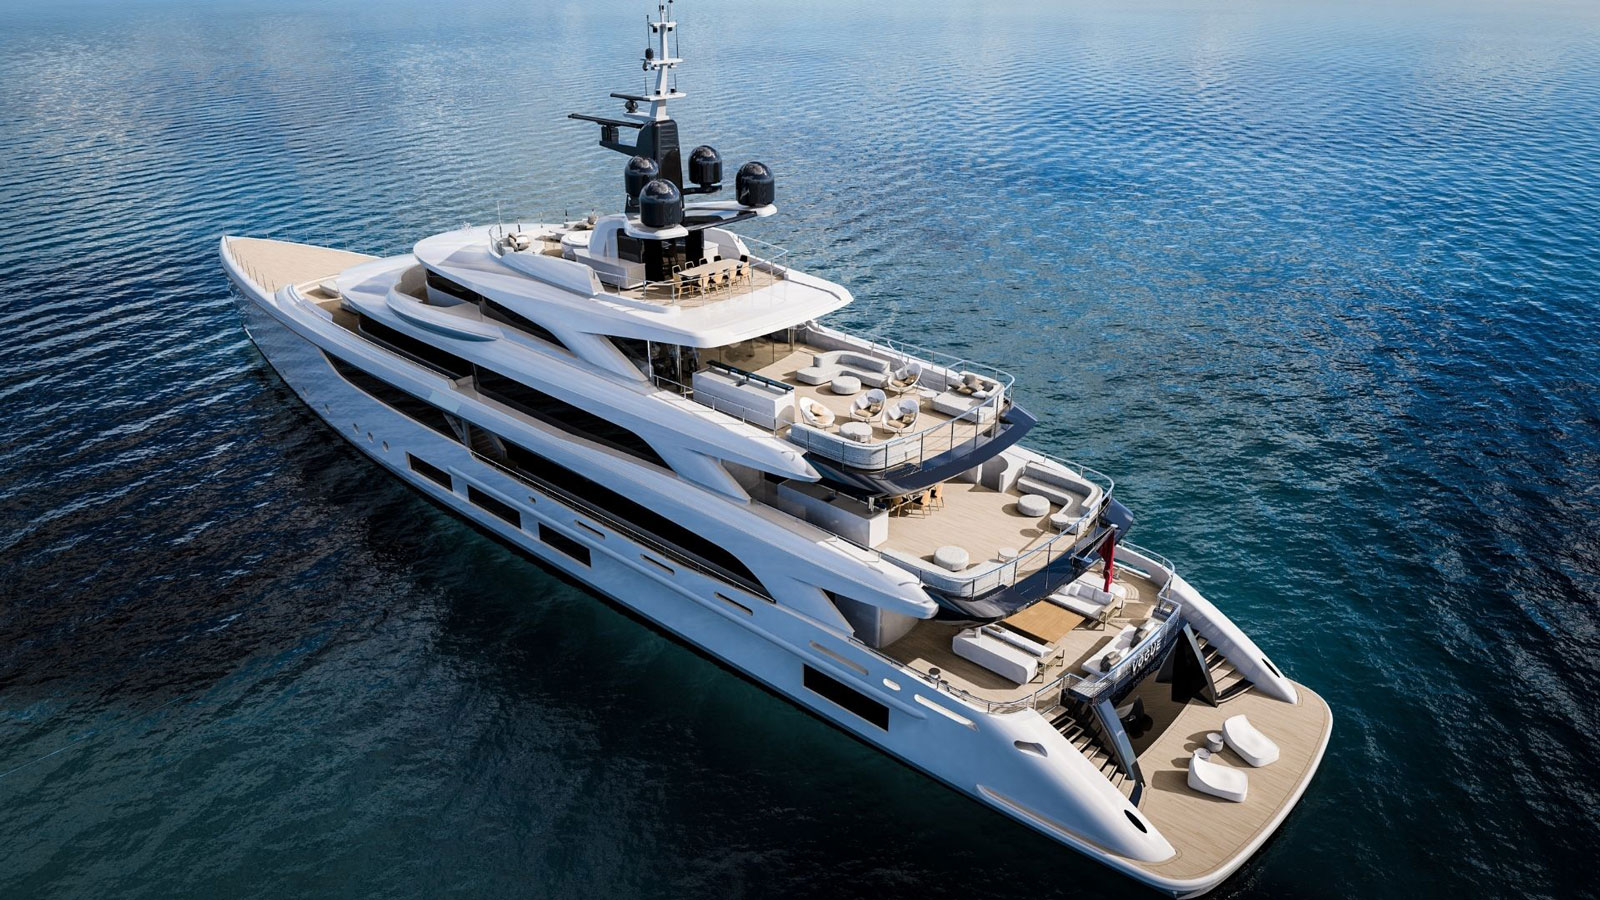 Il cantiere navale Benetti consegna il nuovo mega yacht da 65 metri “Triumph”